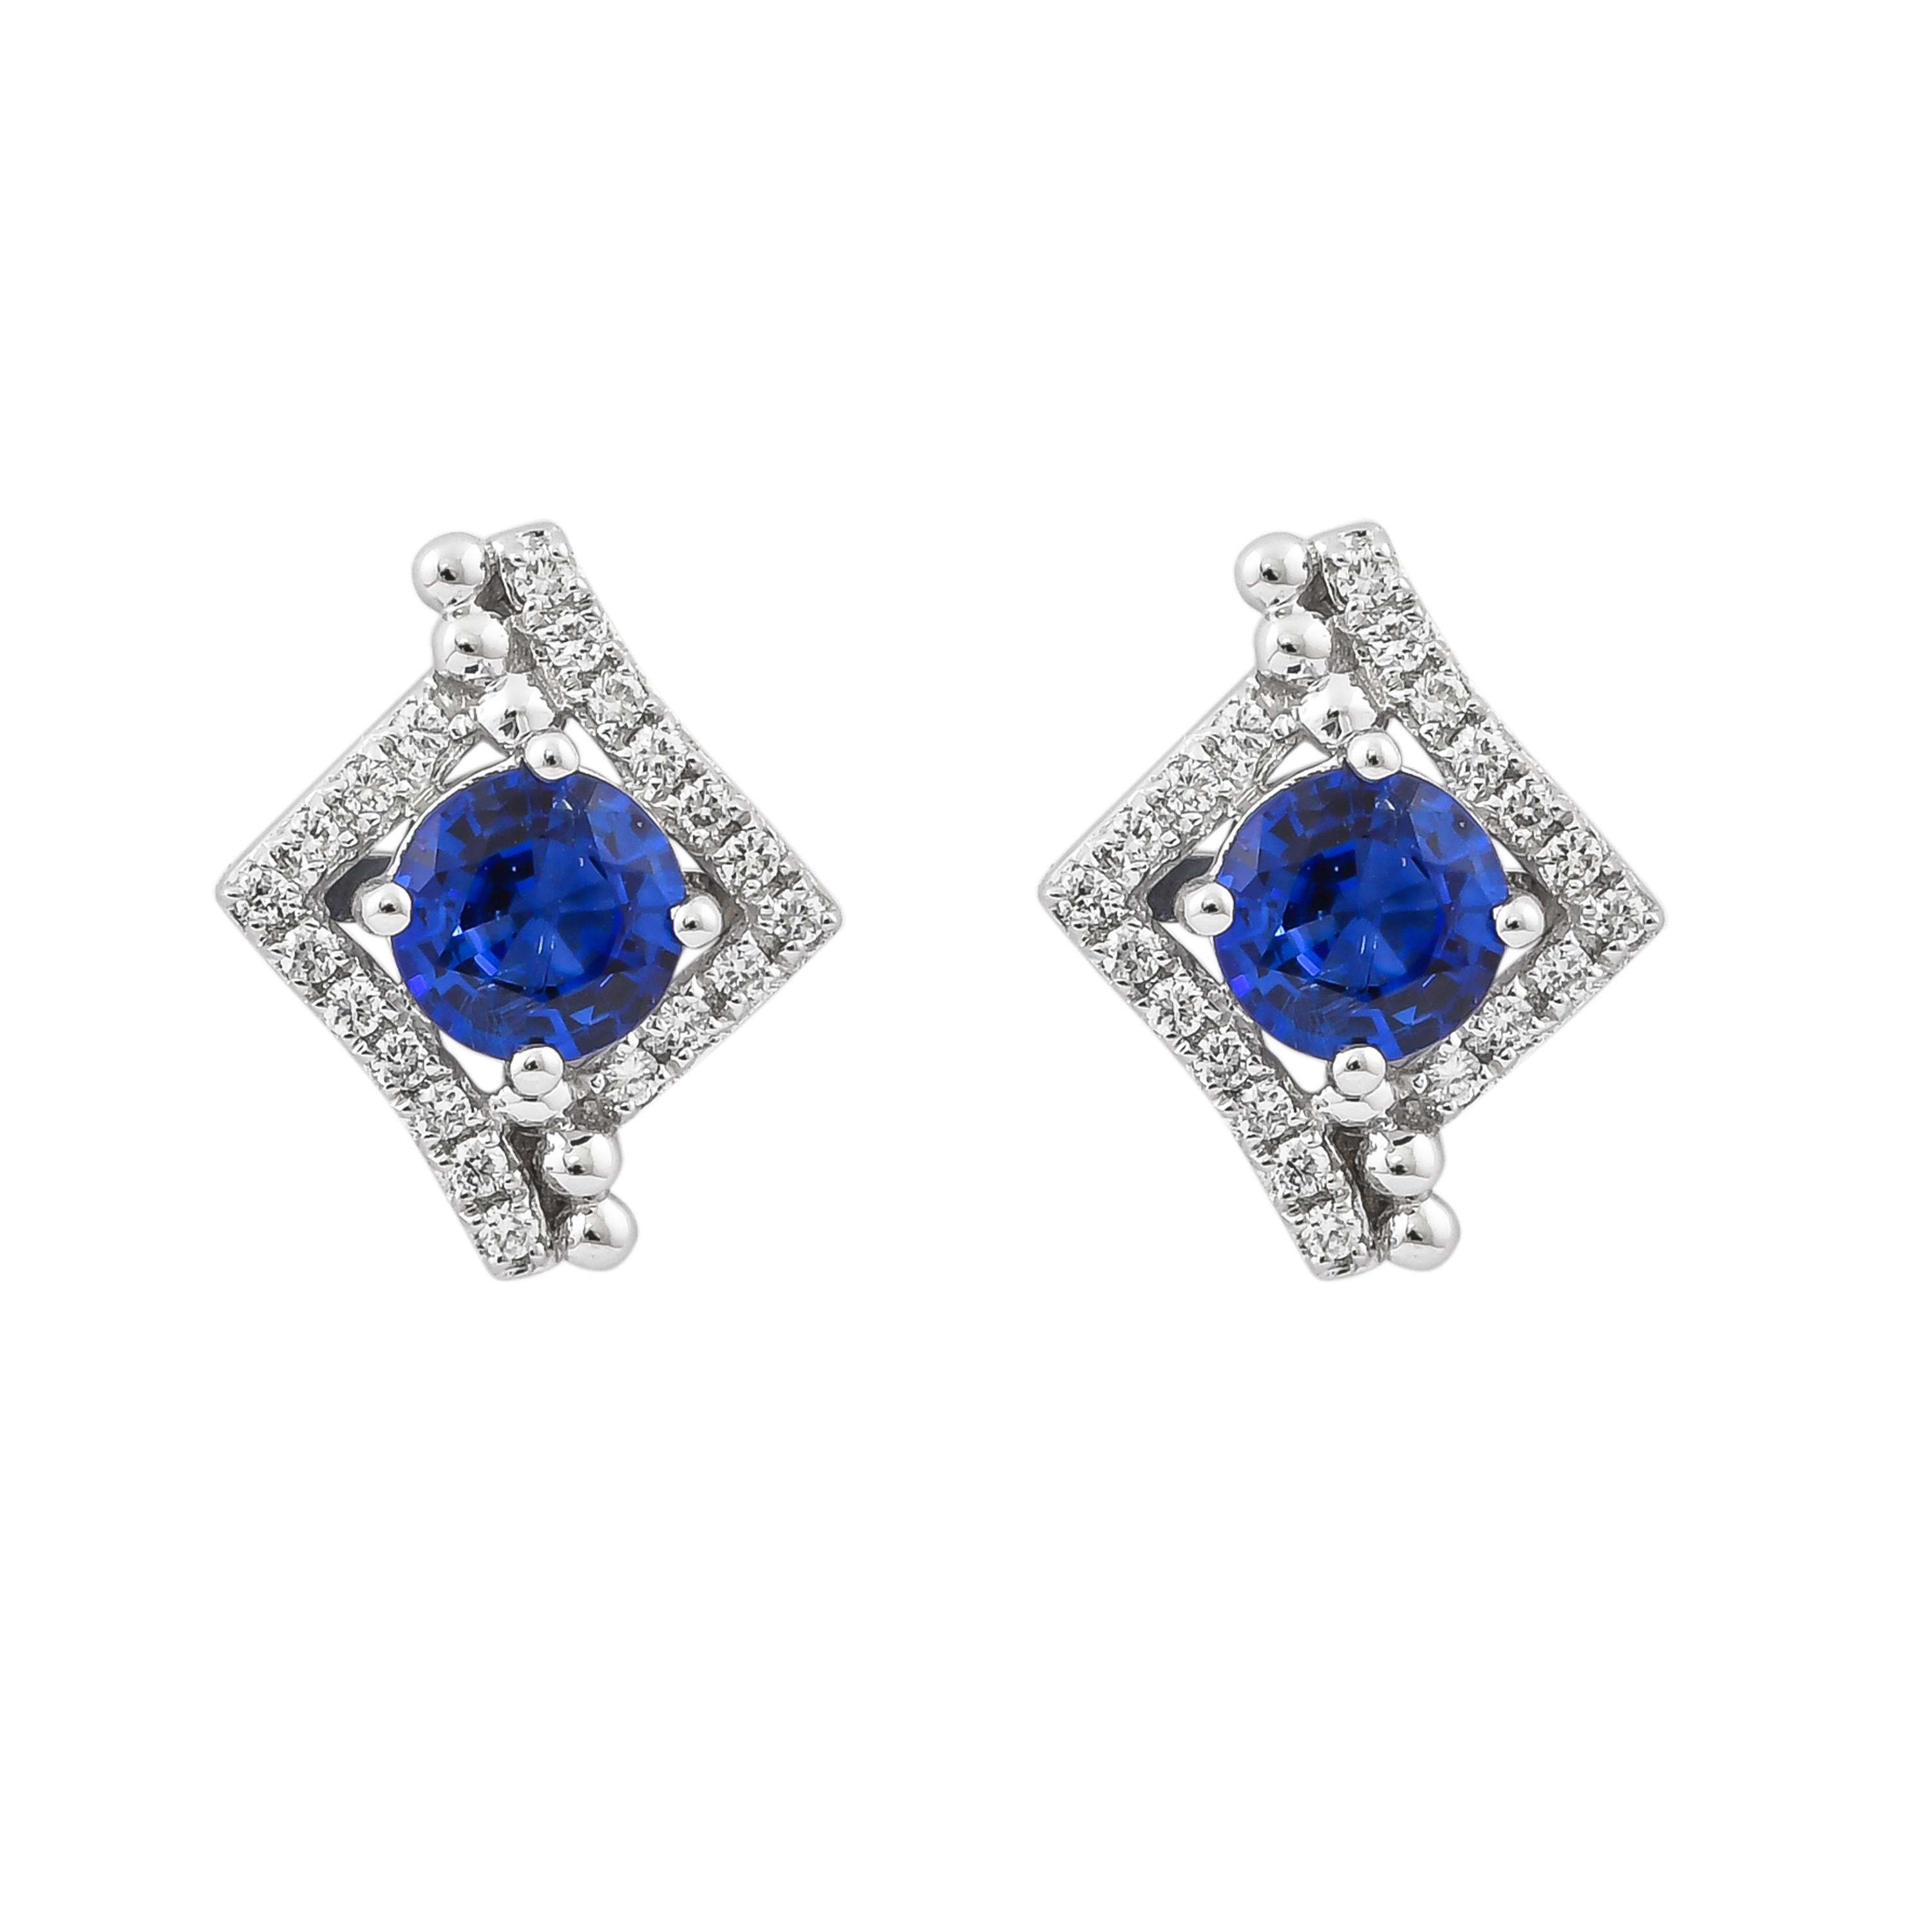 Diese Kollektion bietet eine zierliche Auswahl an Schmuckstücken mit blauen Saphiren und Diamanten. Diese blauen Saphire stammen aus Madagaskar und haben einen kräftigen blauen Farbton. Mit Diamanten akzentuiert, können diese minimalistischen Stücke